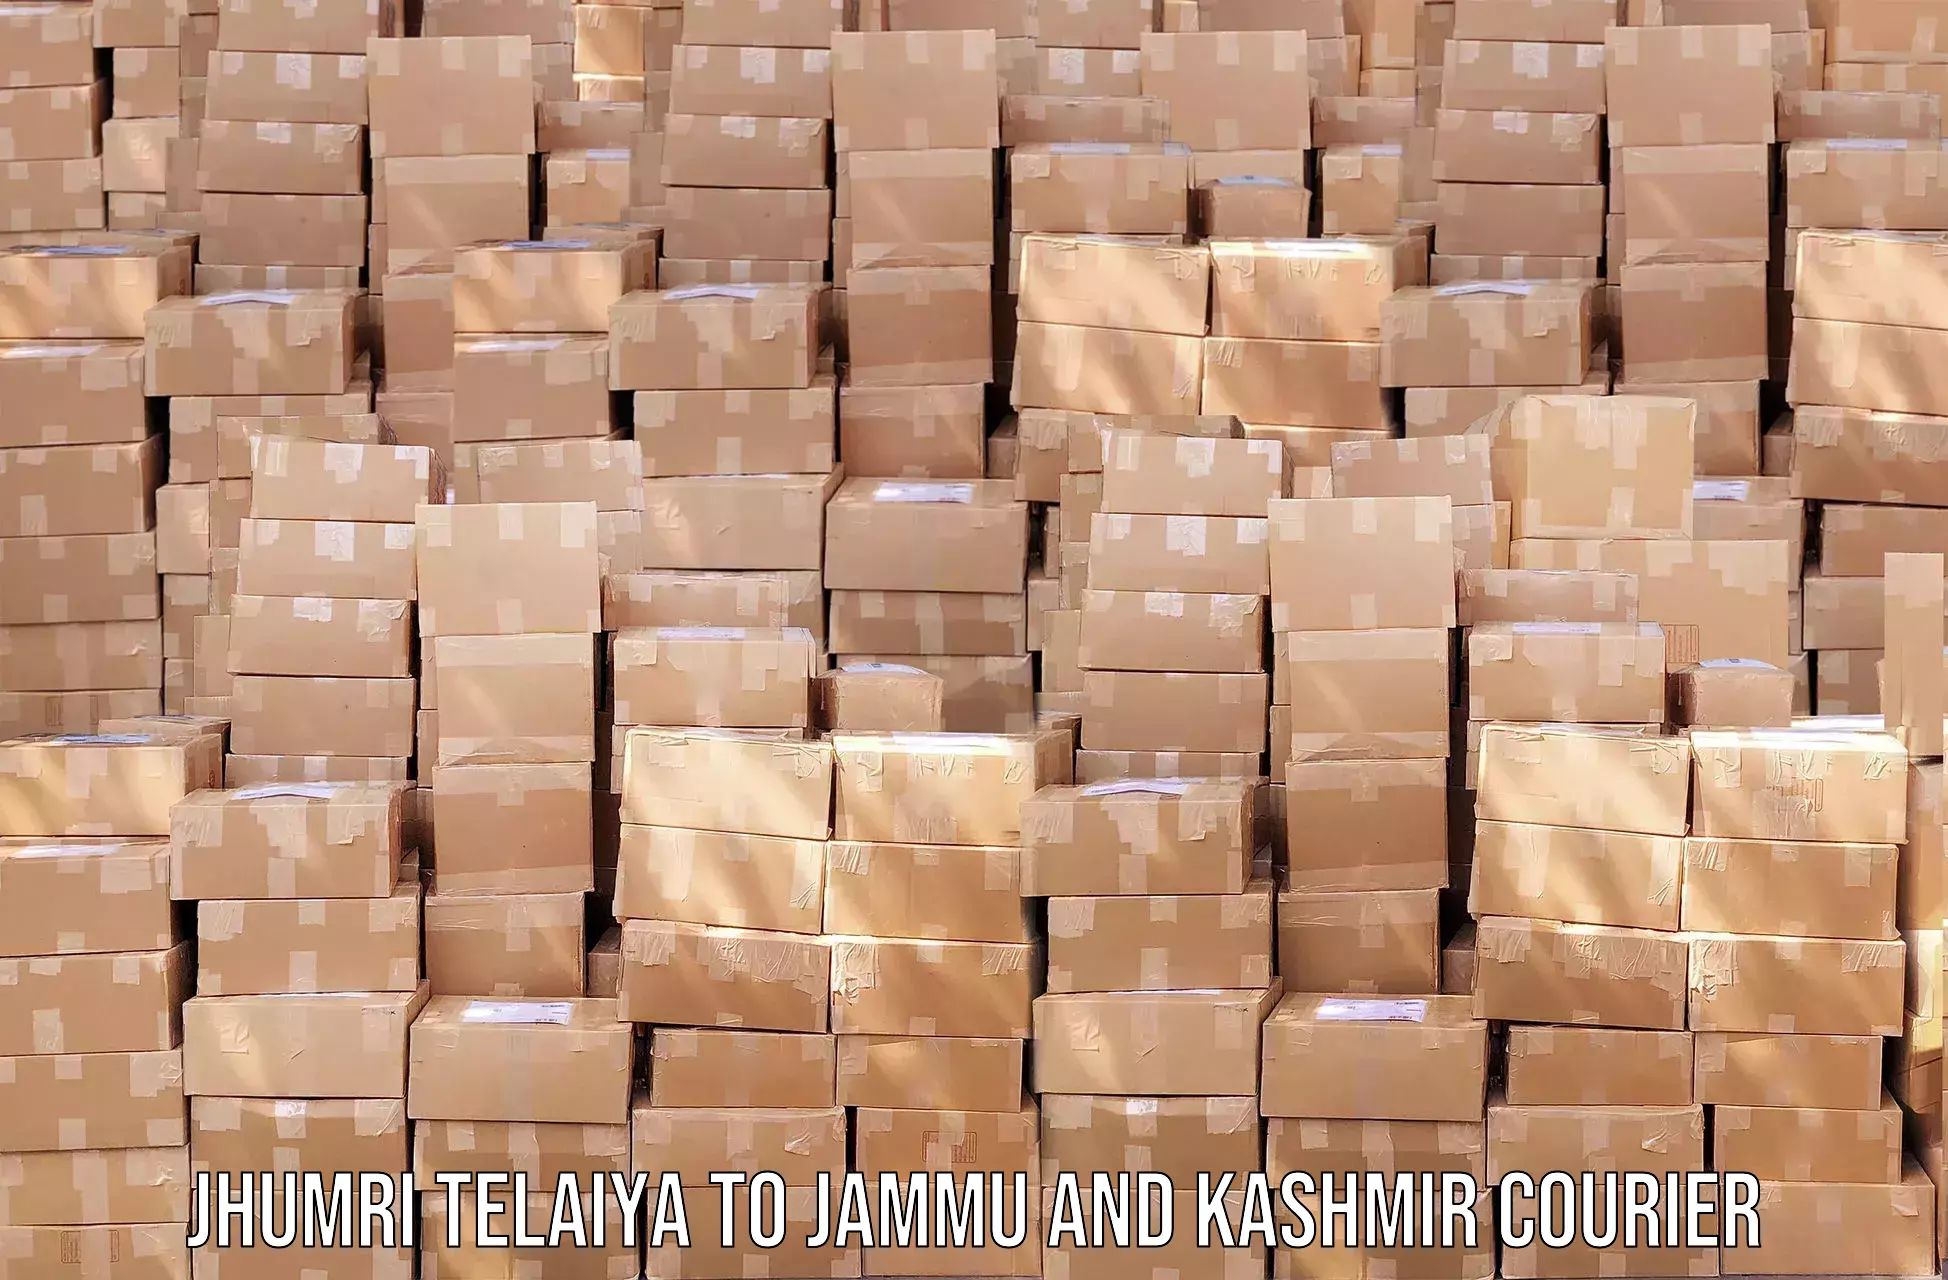 Automated parcel services Jhumri Telaiya to Ramban